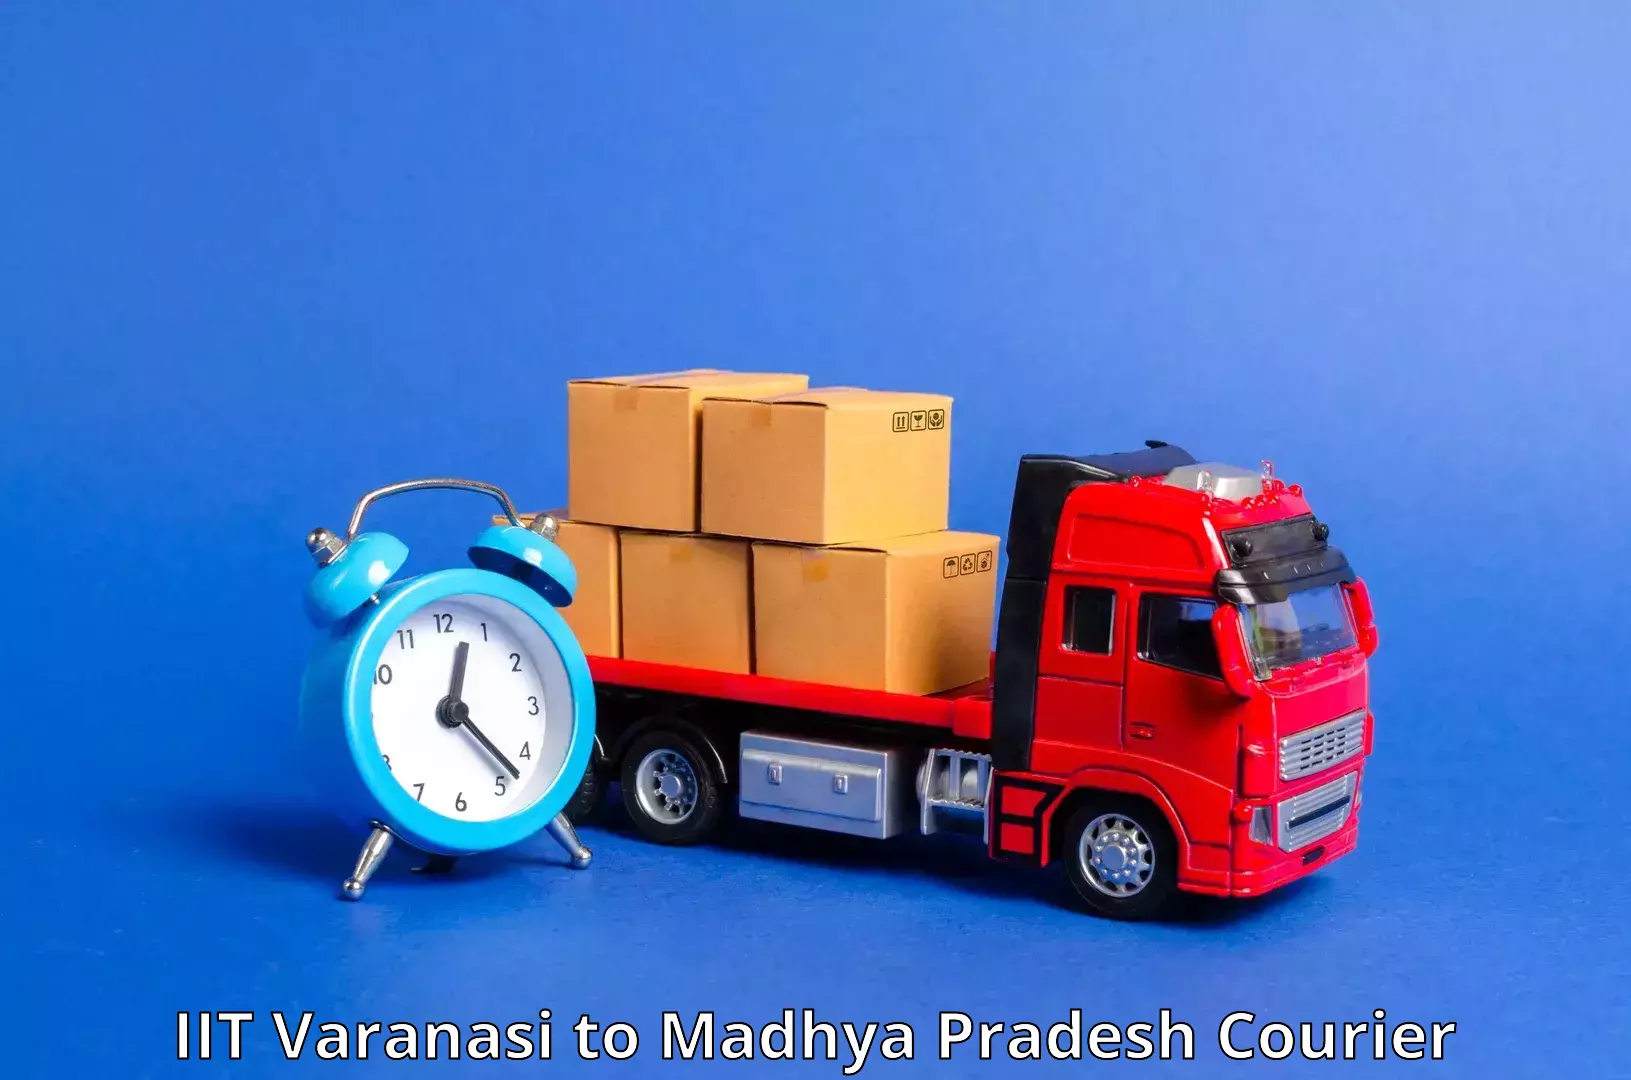 User-friendly courier app IIT Varanasi to Kareli